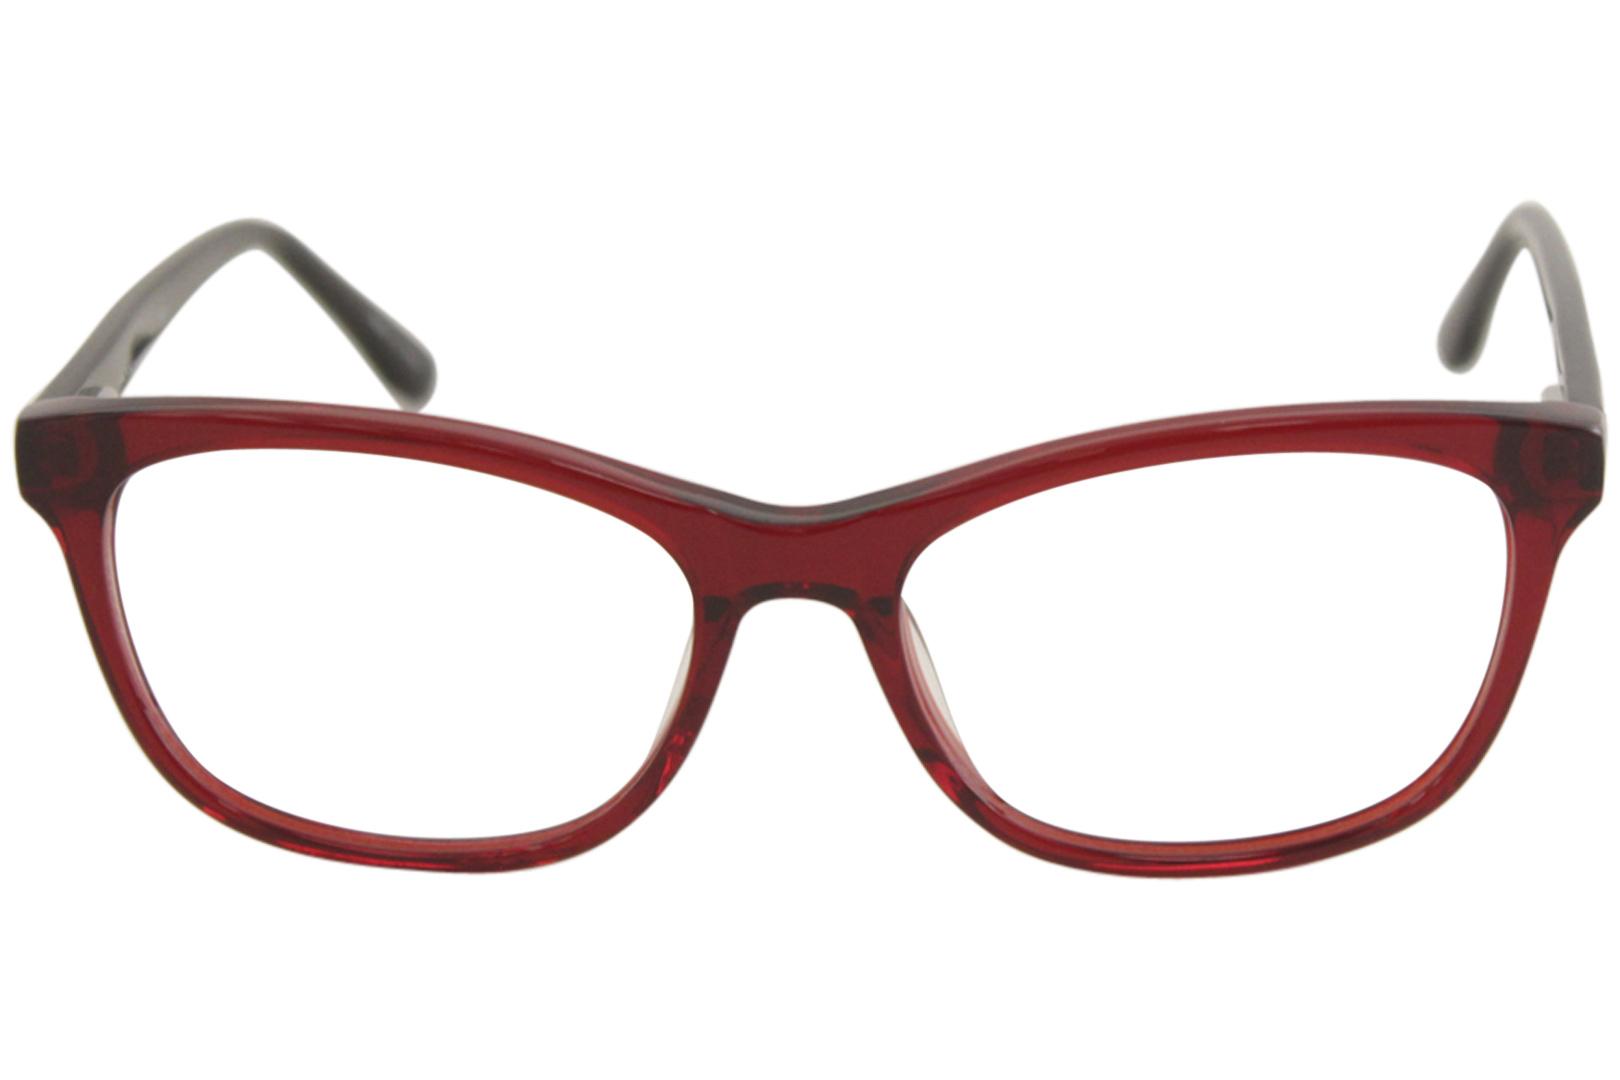 Nicole Miller Women's Eyeglasses Allen C02 Burgundy/Black Optical Frame ...